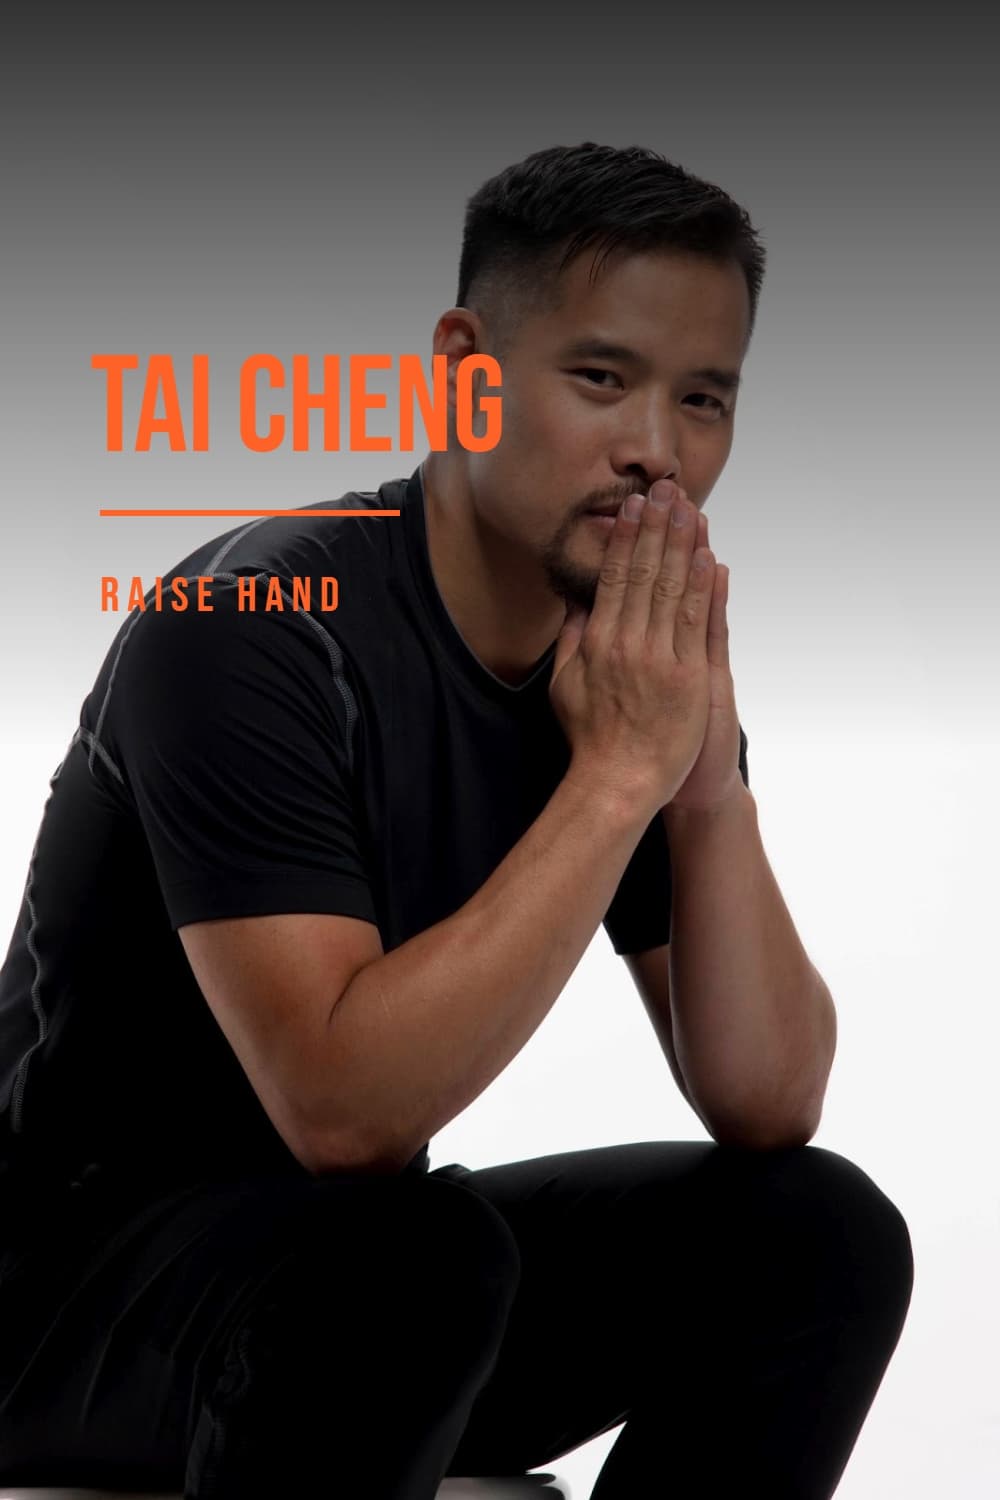 Tai Cheng - Raise Hand